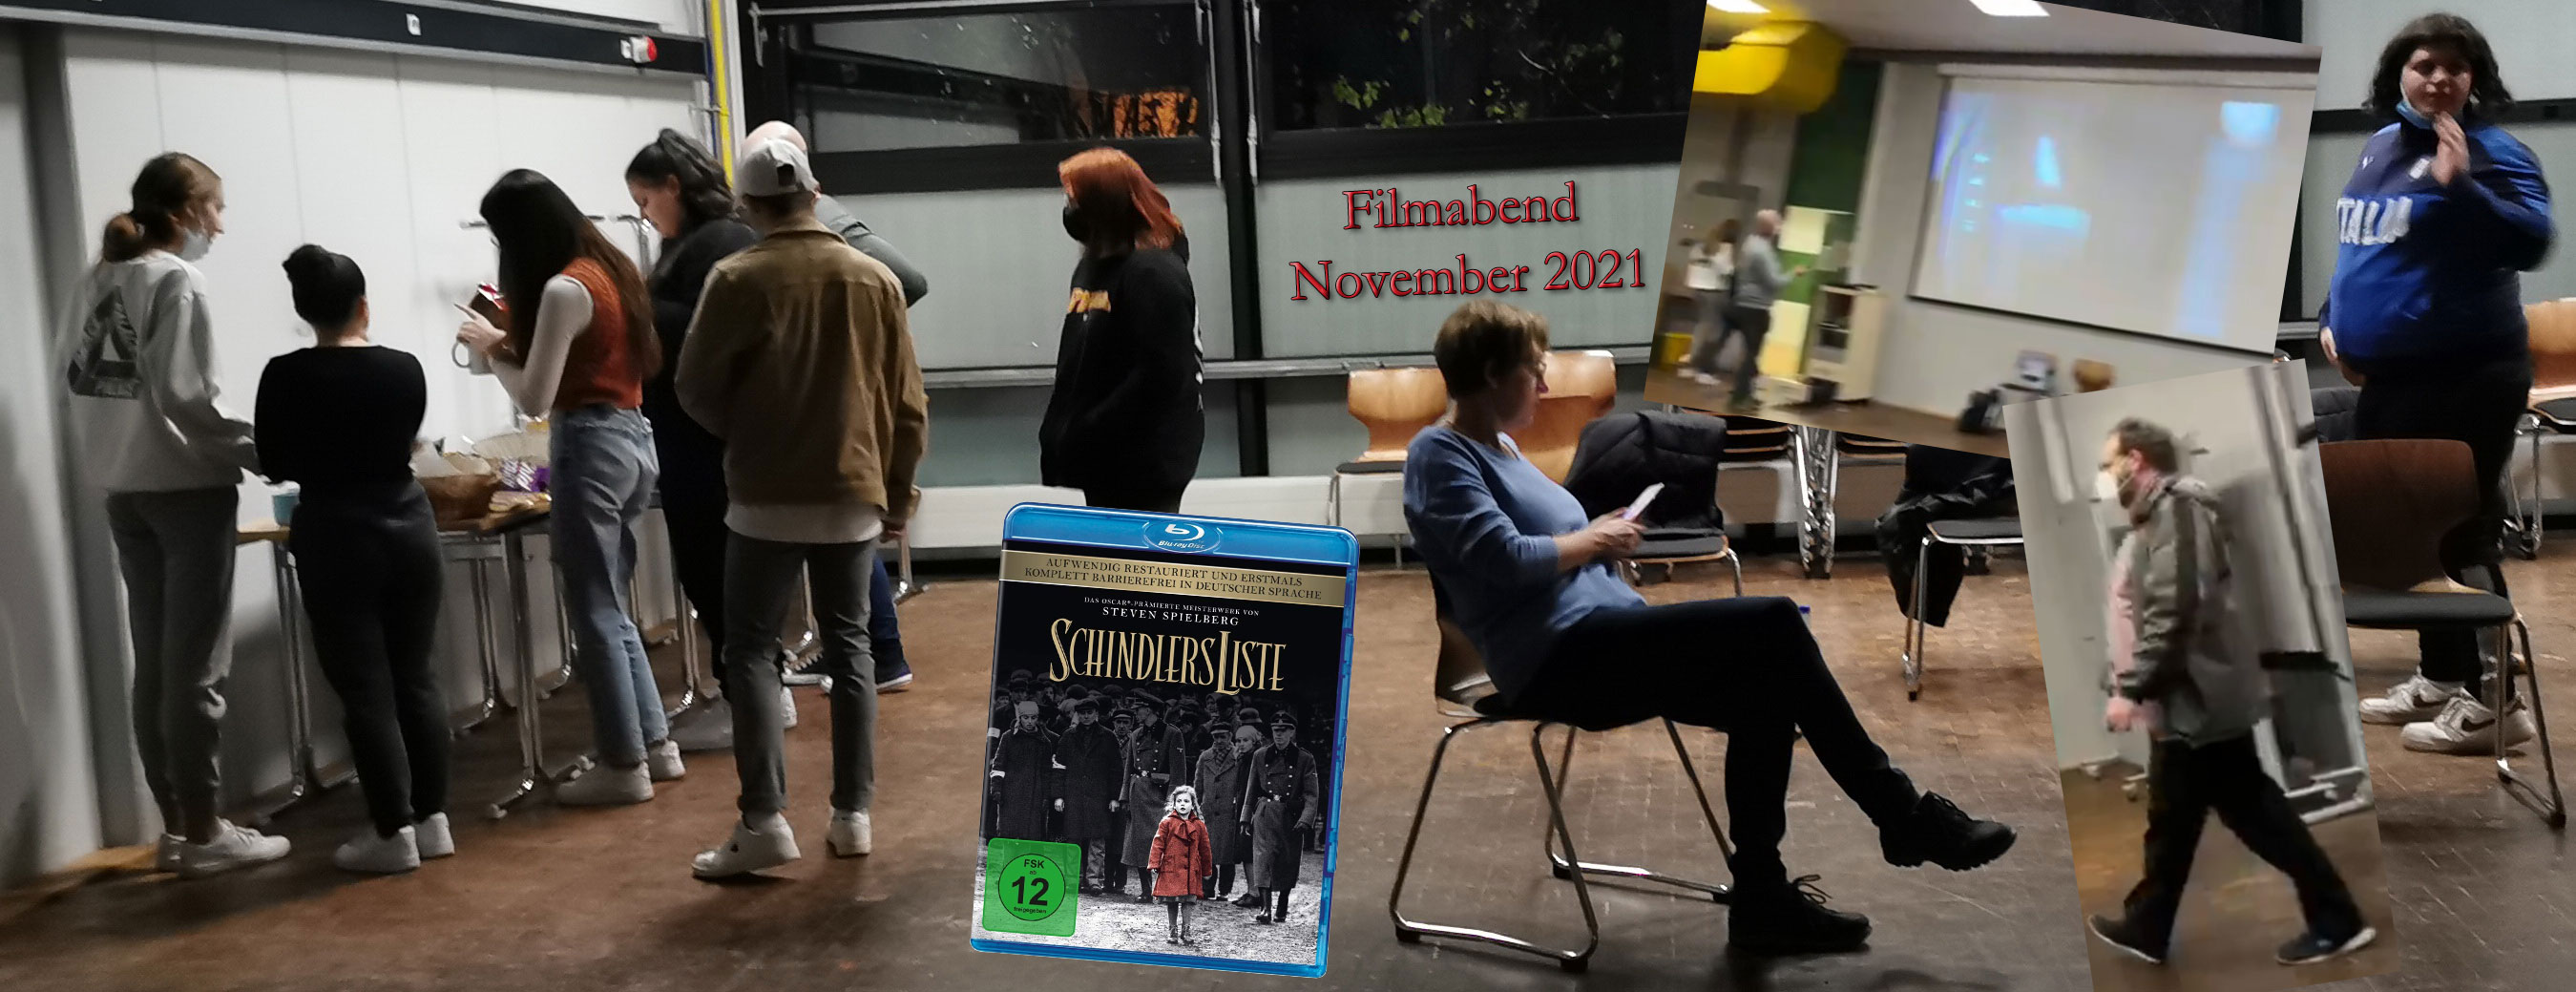 Kinoabend November 2021: Schindlers Liste